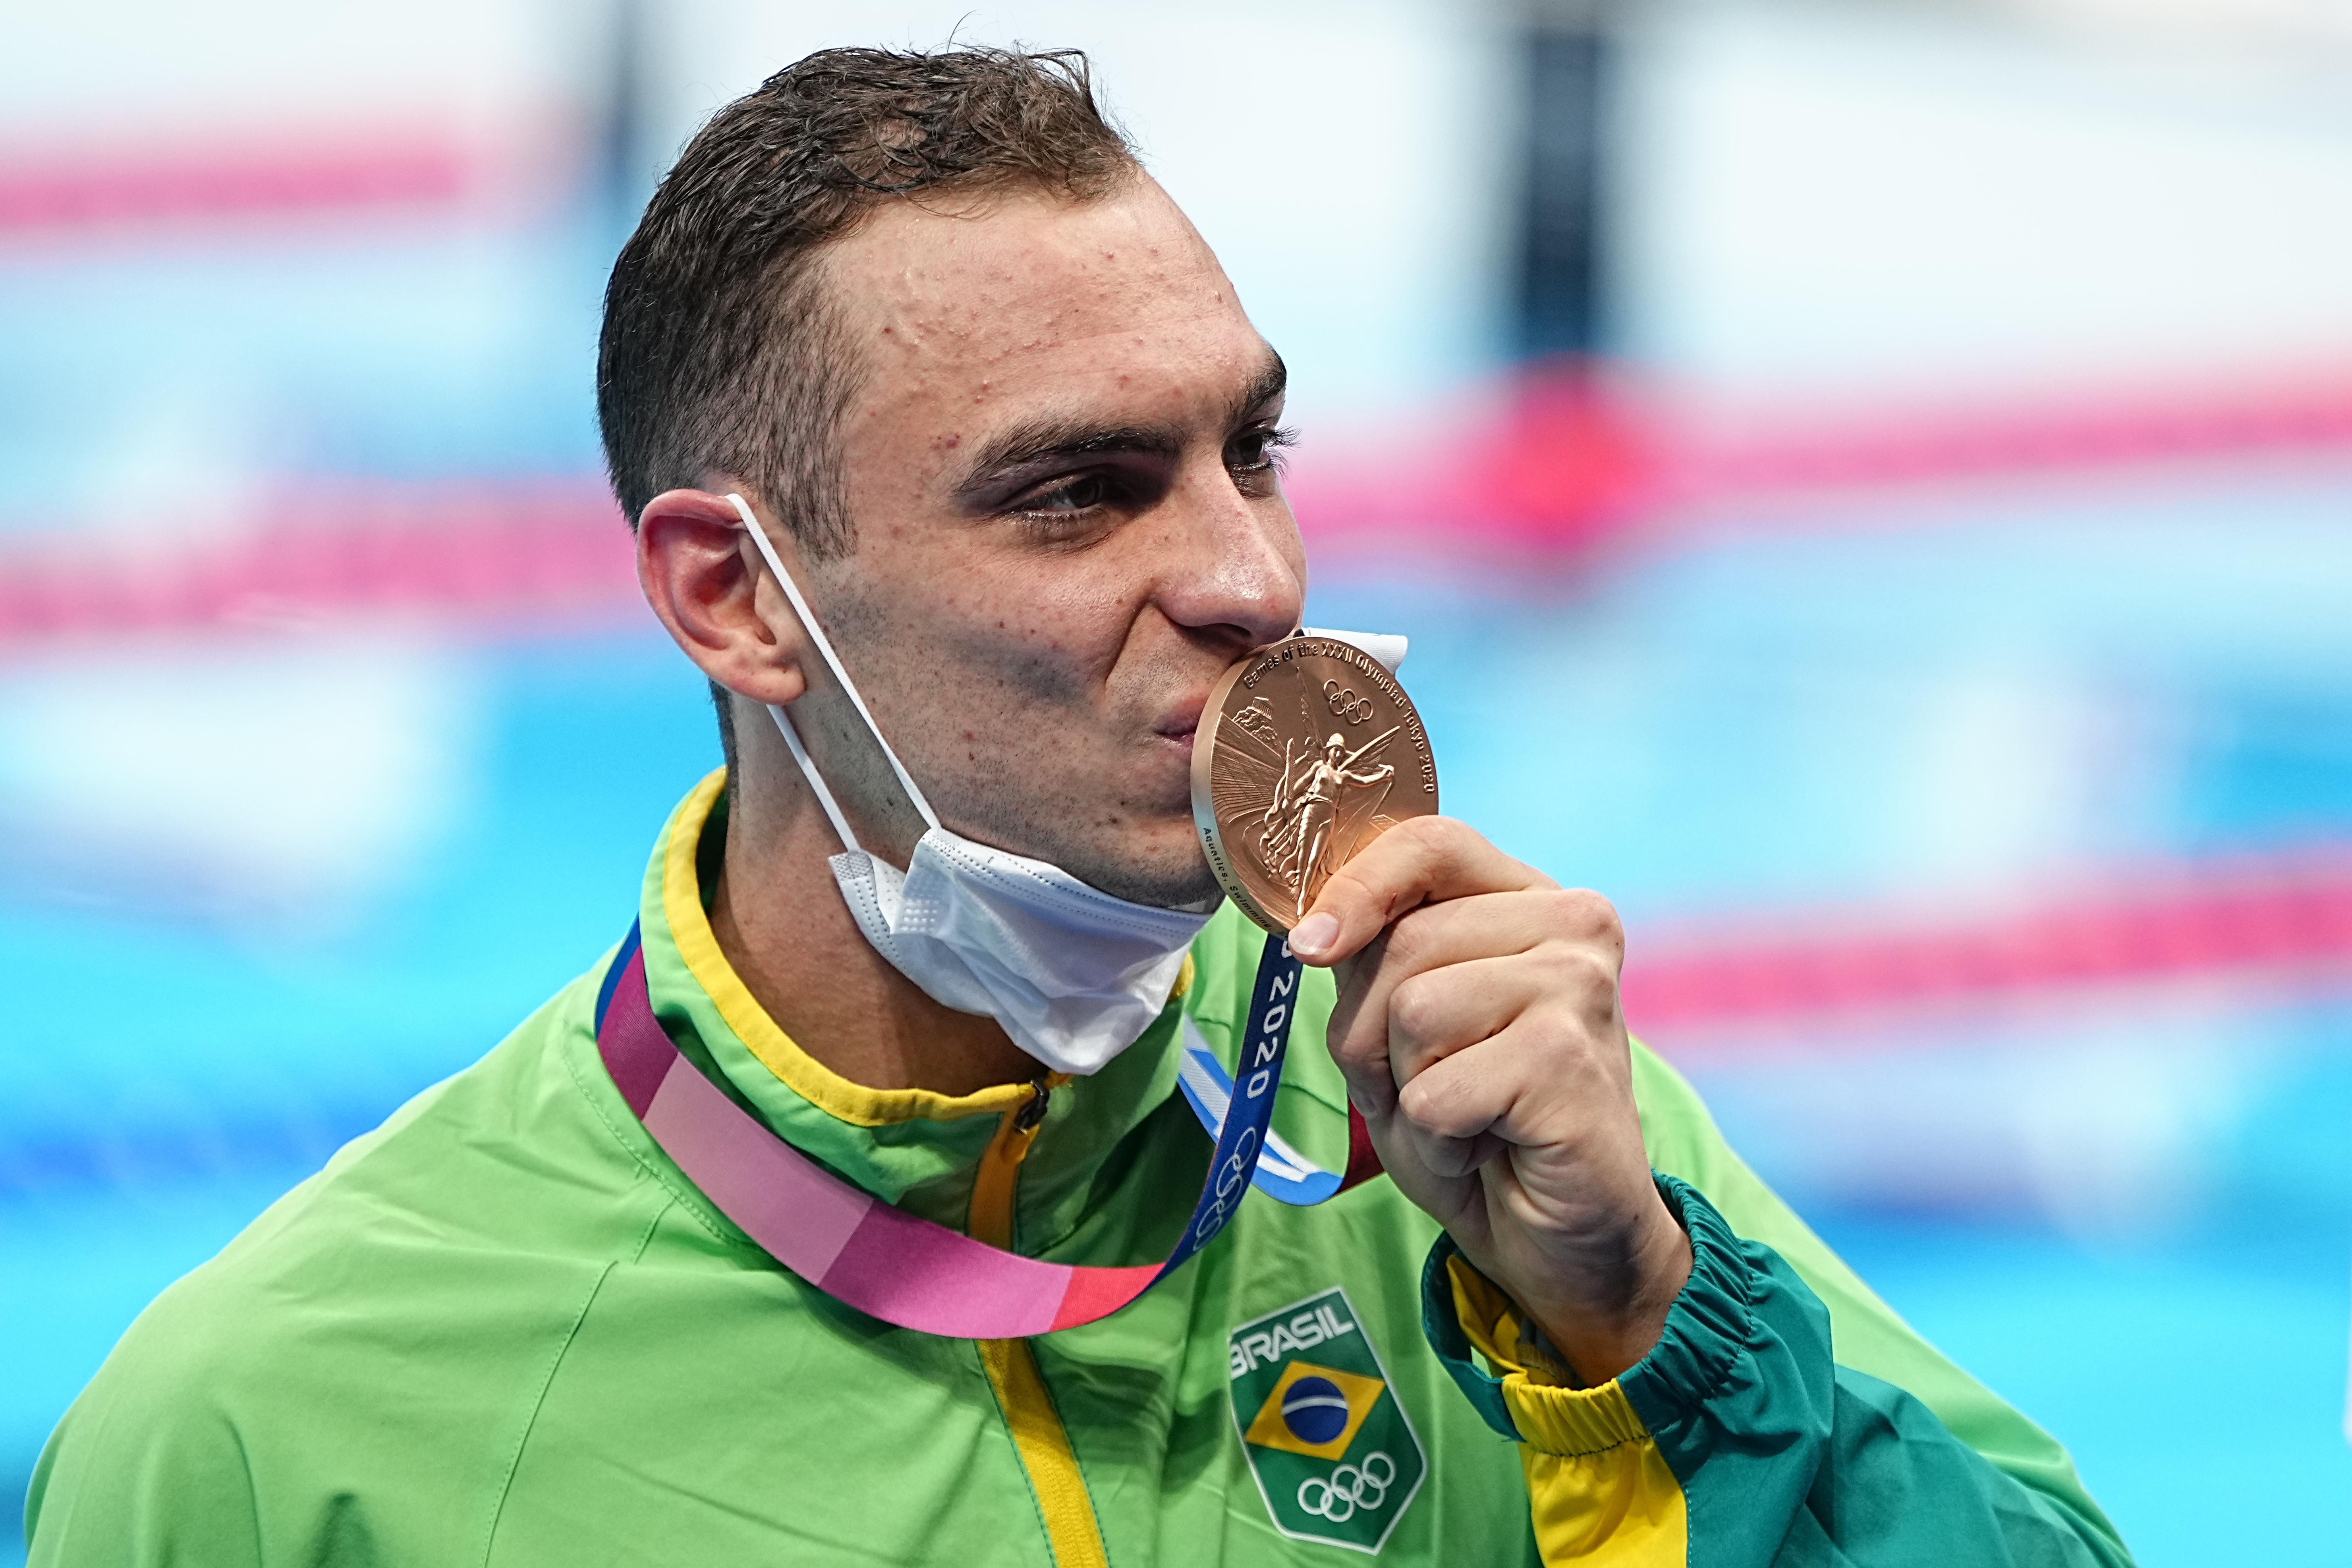 Vaga olímpica e bronze marcam o desempenho do tênis brasileiro em